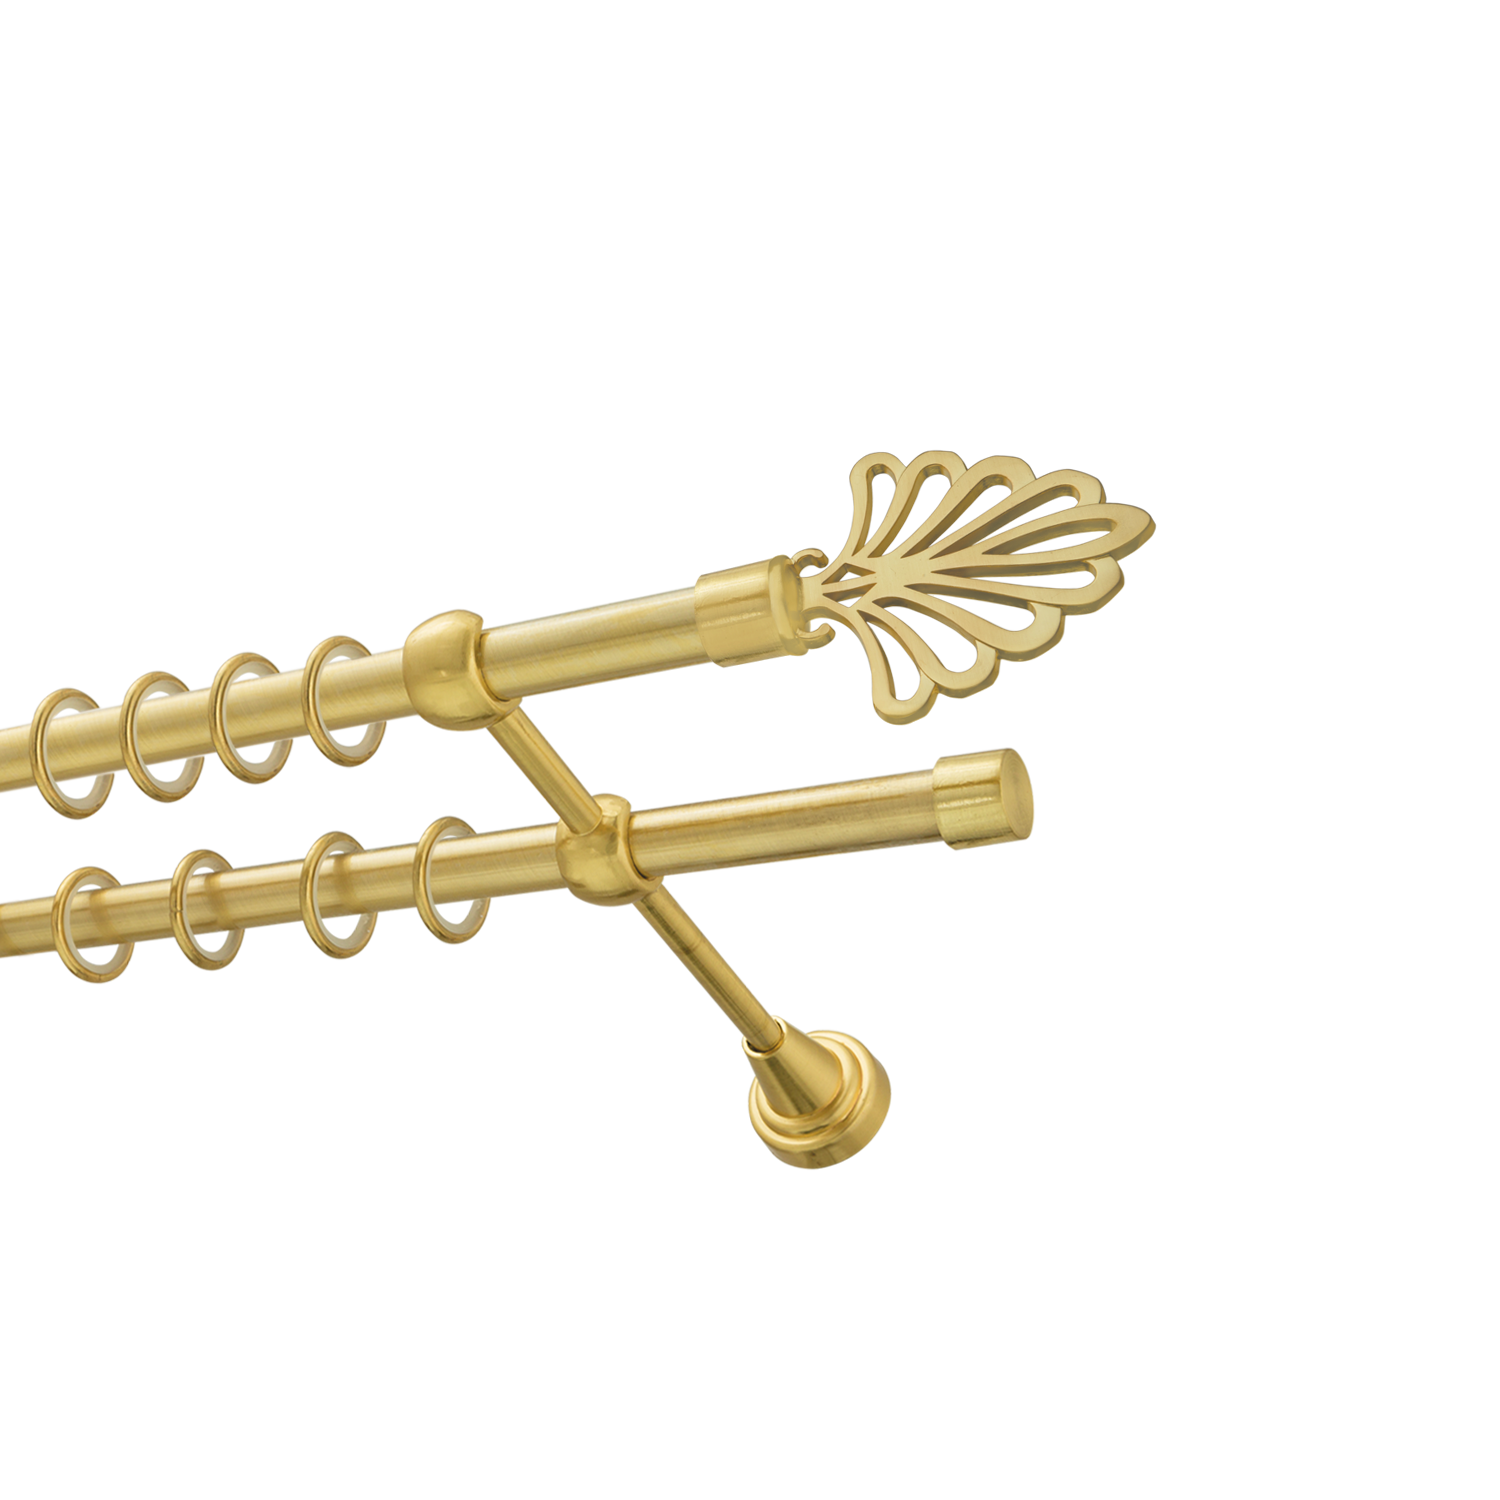 Металлический карниз для штор Бутик, двухрядный 16/16 мм, золото, гладкая штанга, длина 140 см - фото Wikidecor.ru